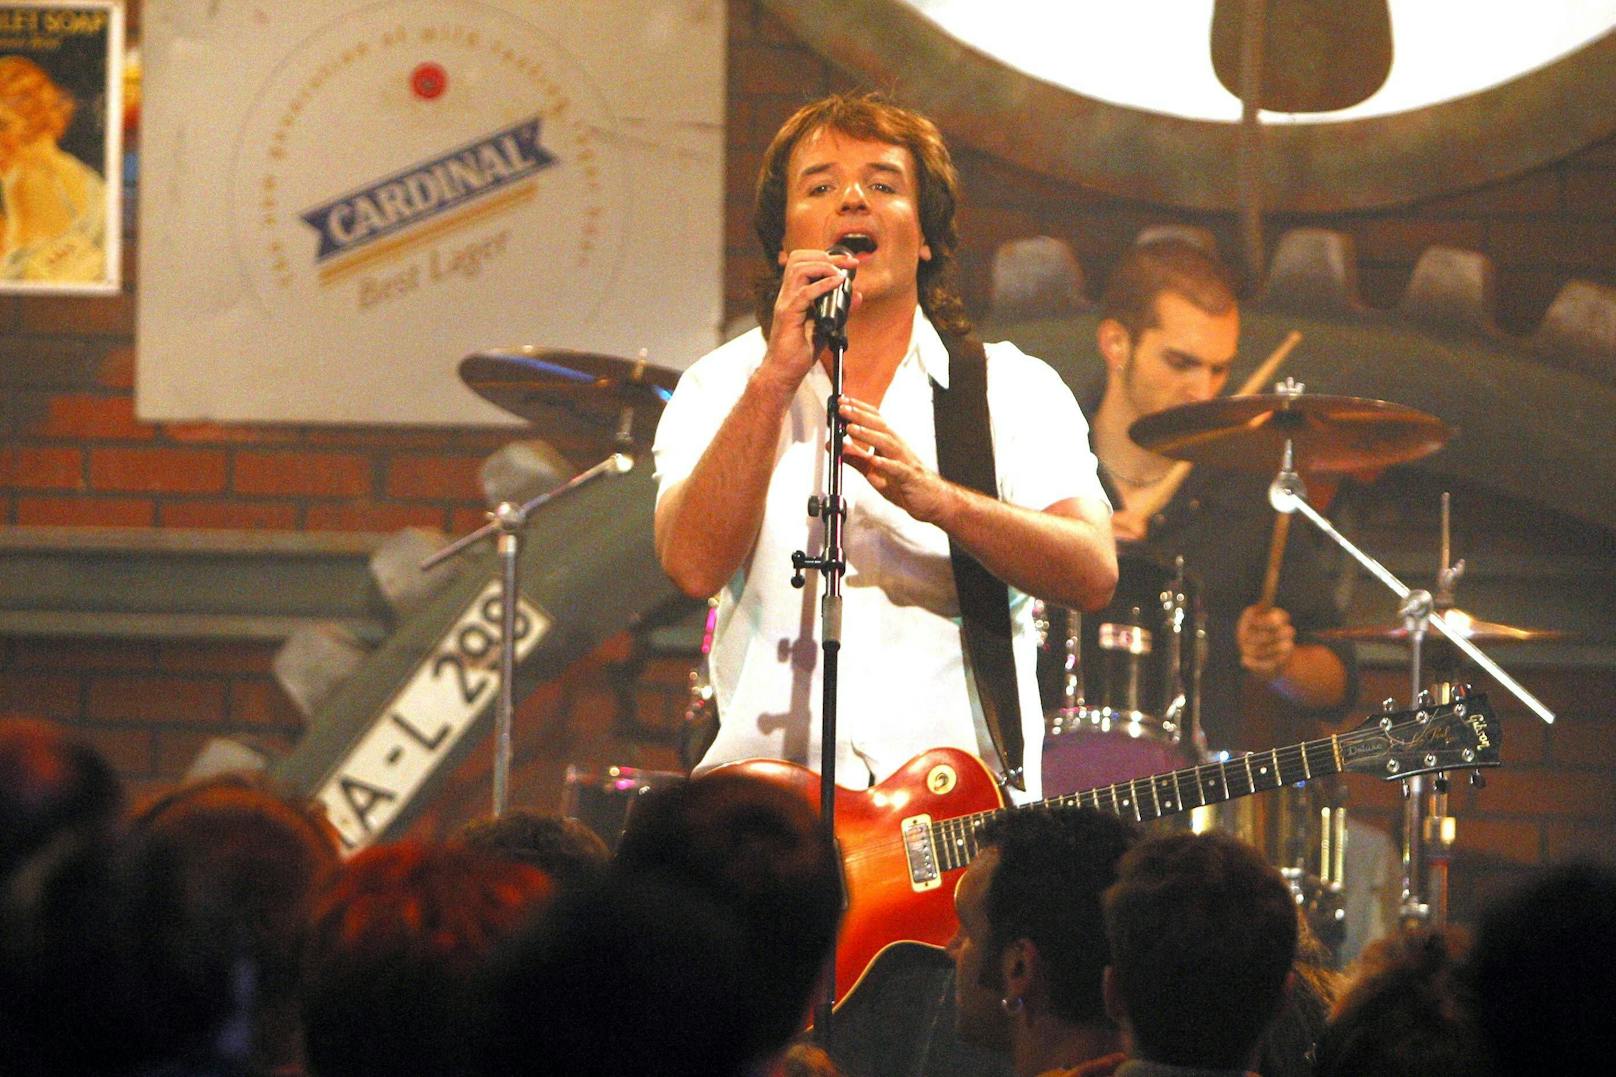 Clemens Maria Haas war mit seiner Band "Steinwolke" ein Star in den 80ern.